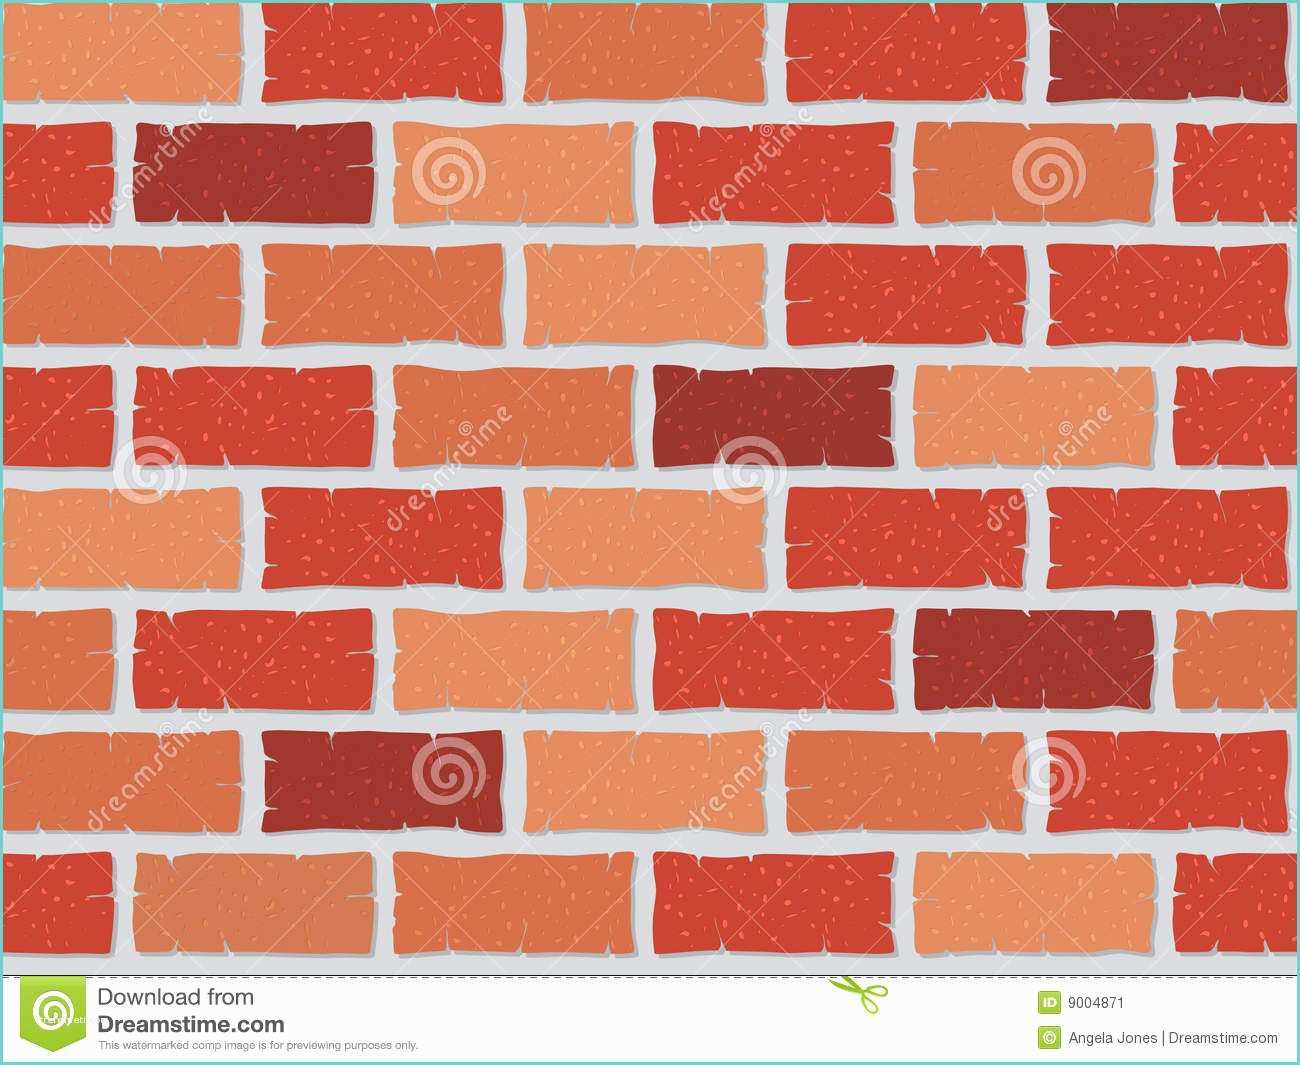 Dessin Mur De Brique Mur De Briques Sans Joint Image Stock Image